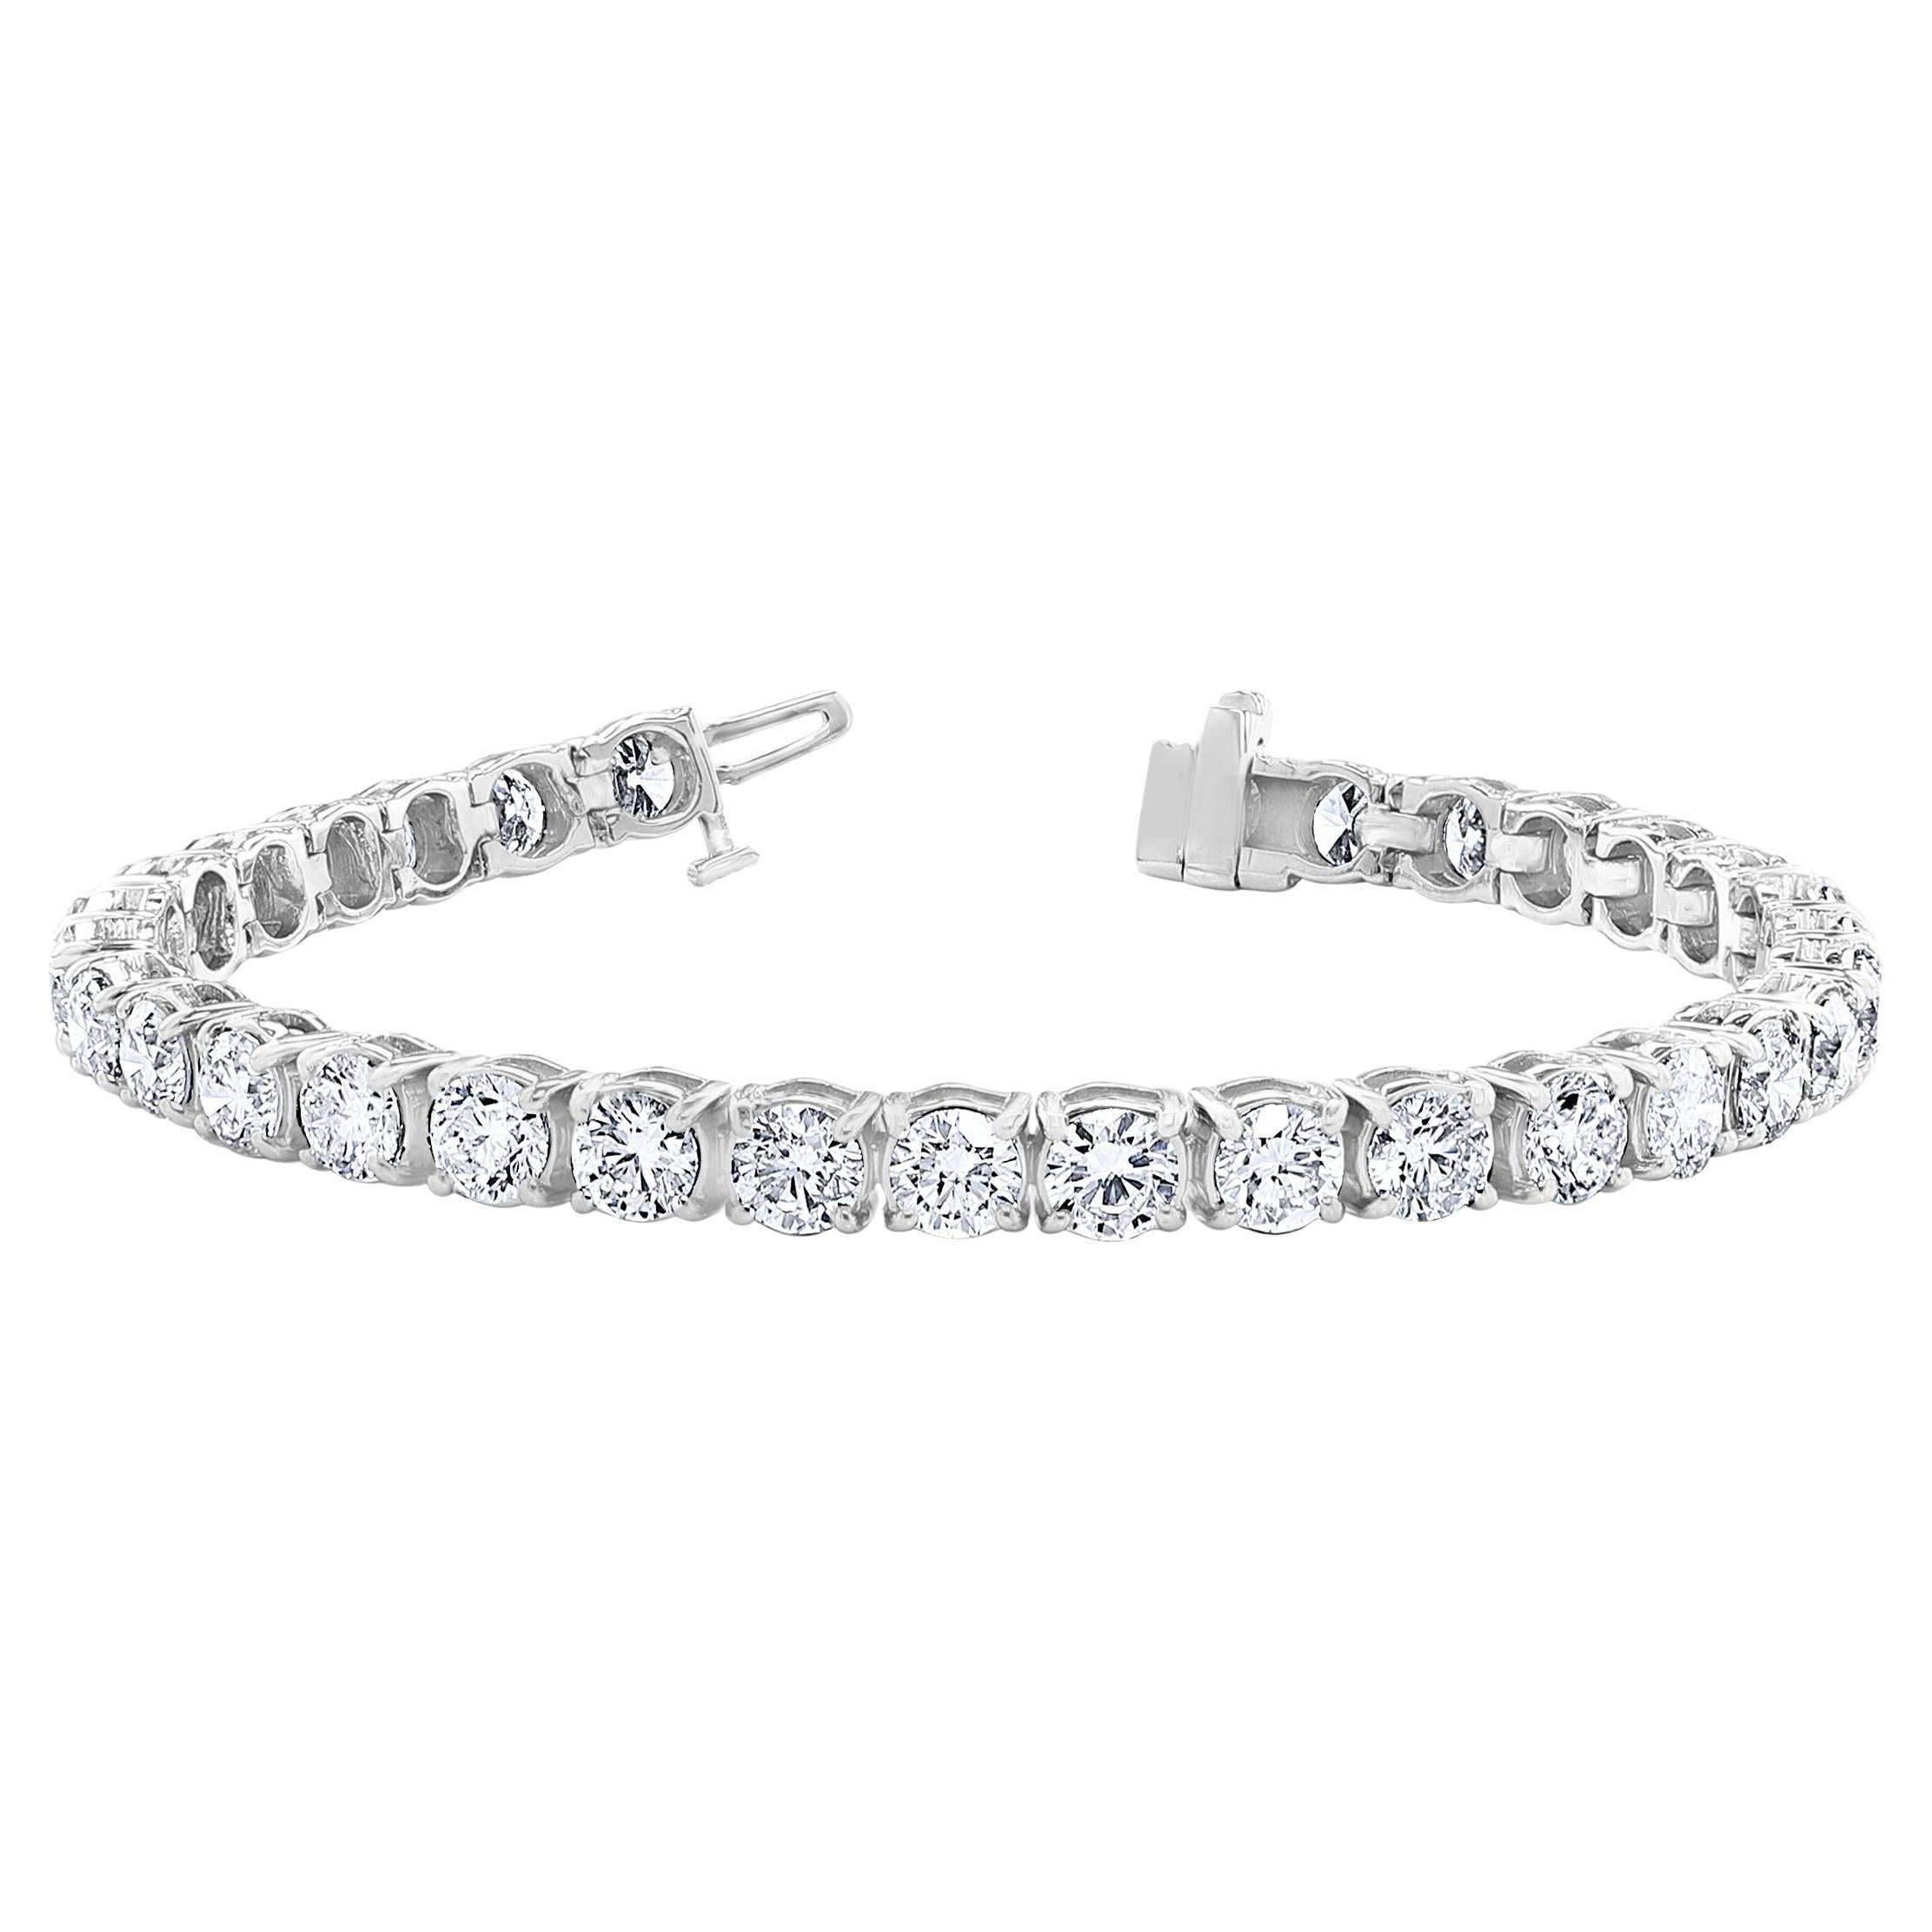 Bracelet tennis avec diamants ronds de 15,01 carats de 0,50 carat chacun